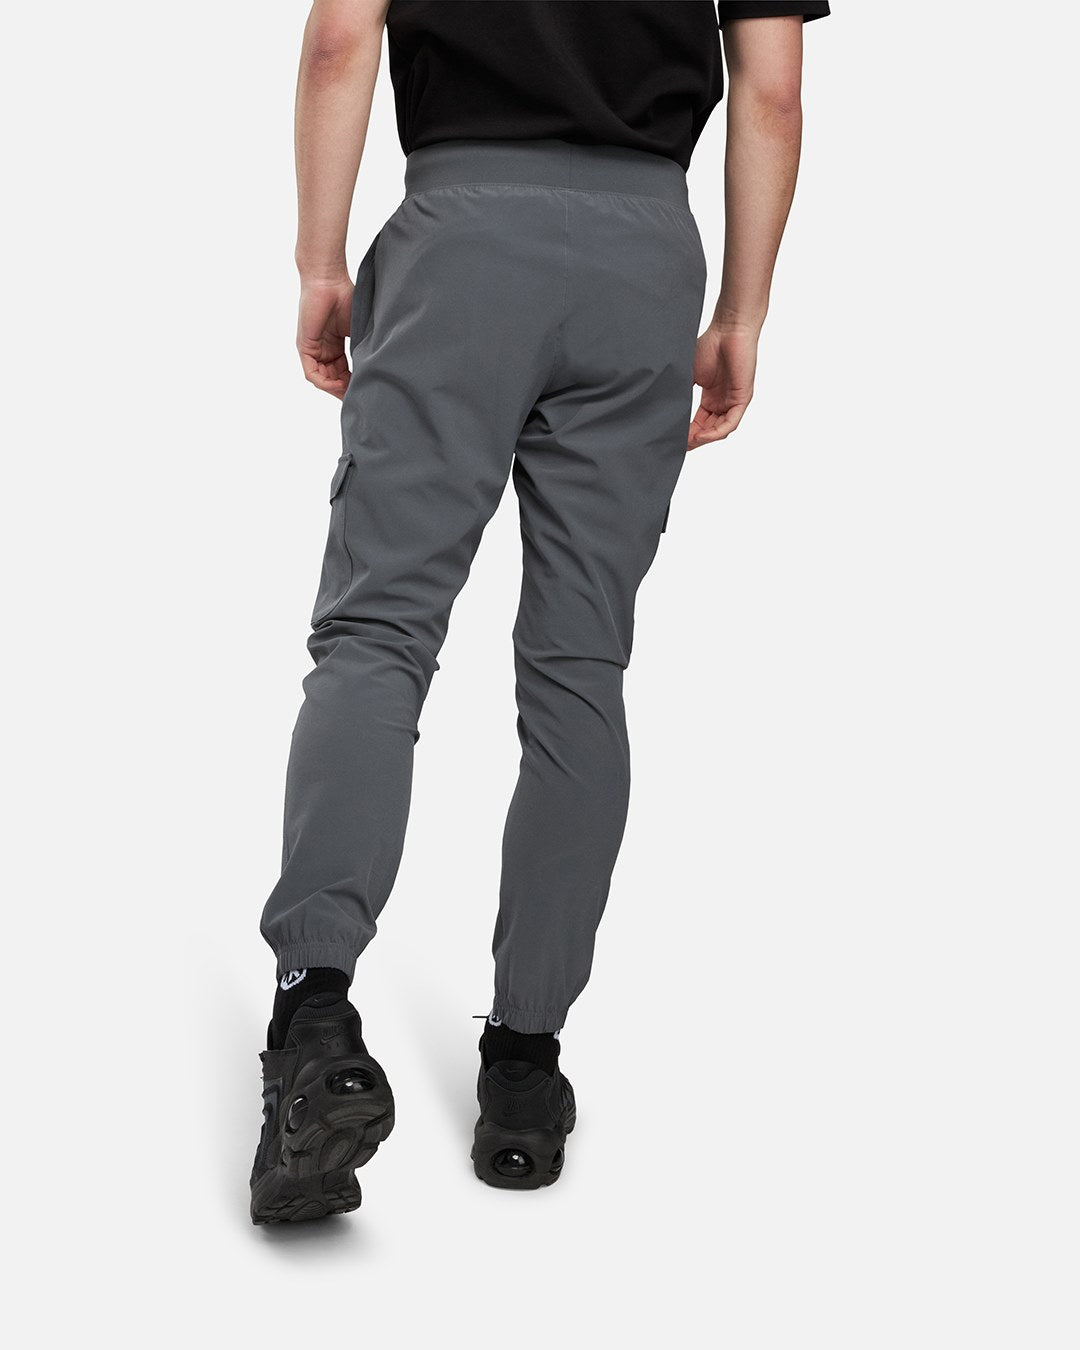 Pantalon Under Armour Stretch Woven - Gris/Noir